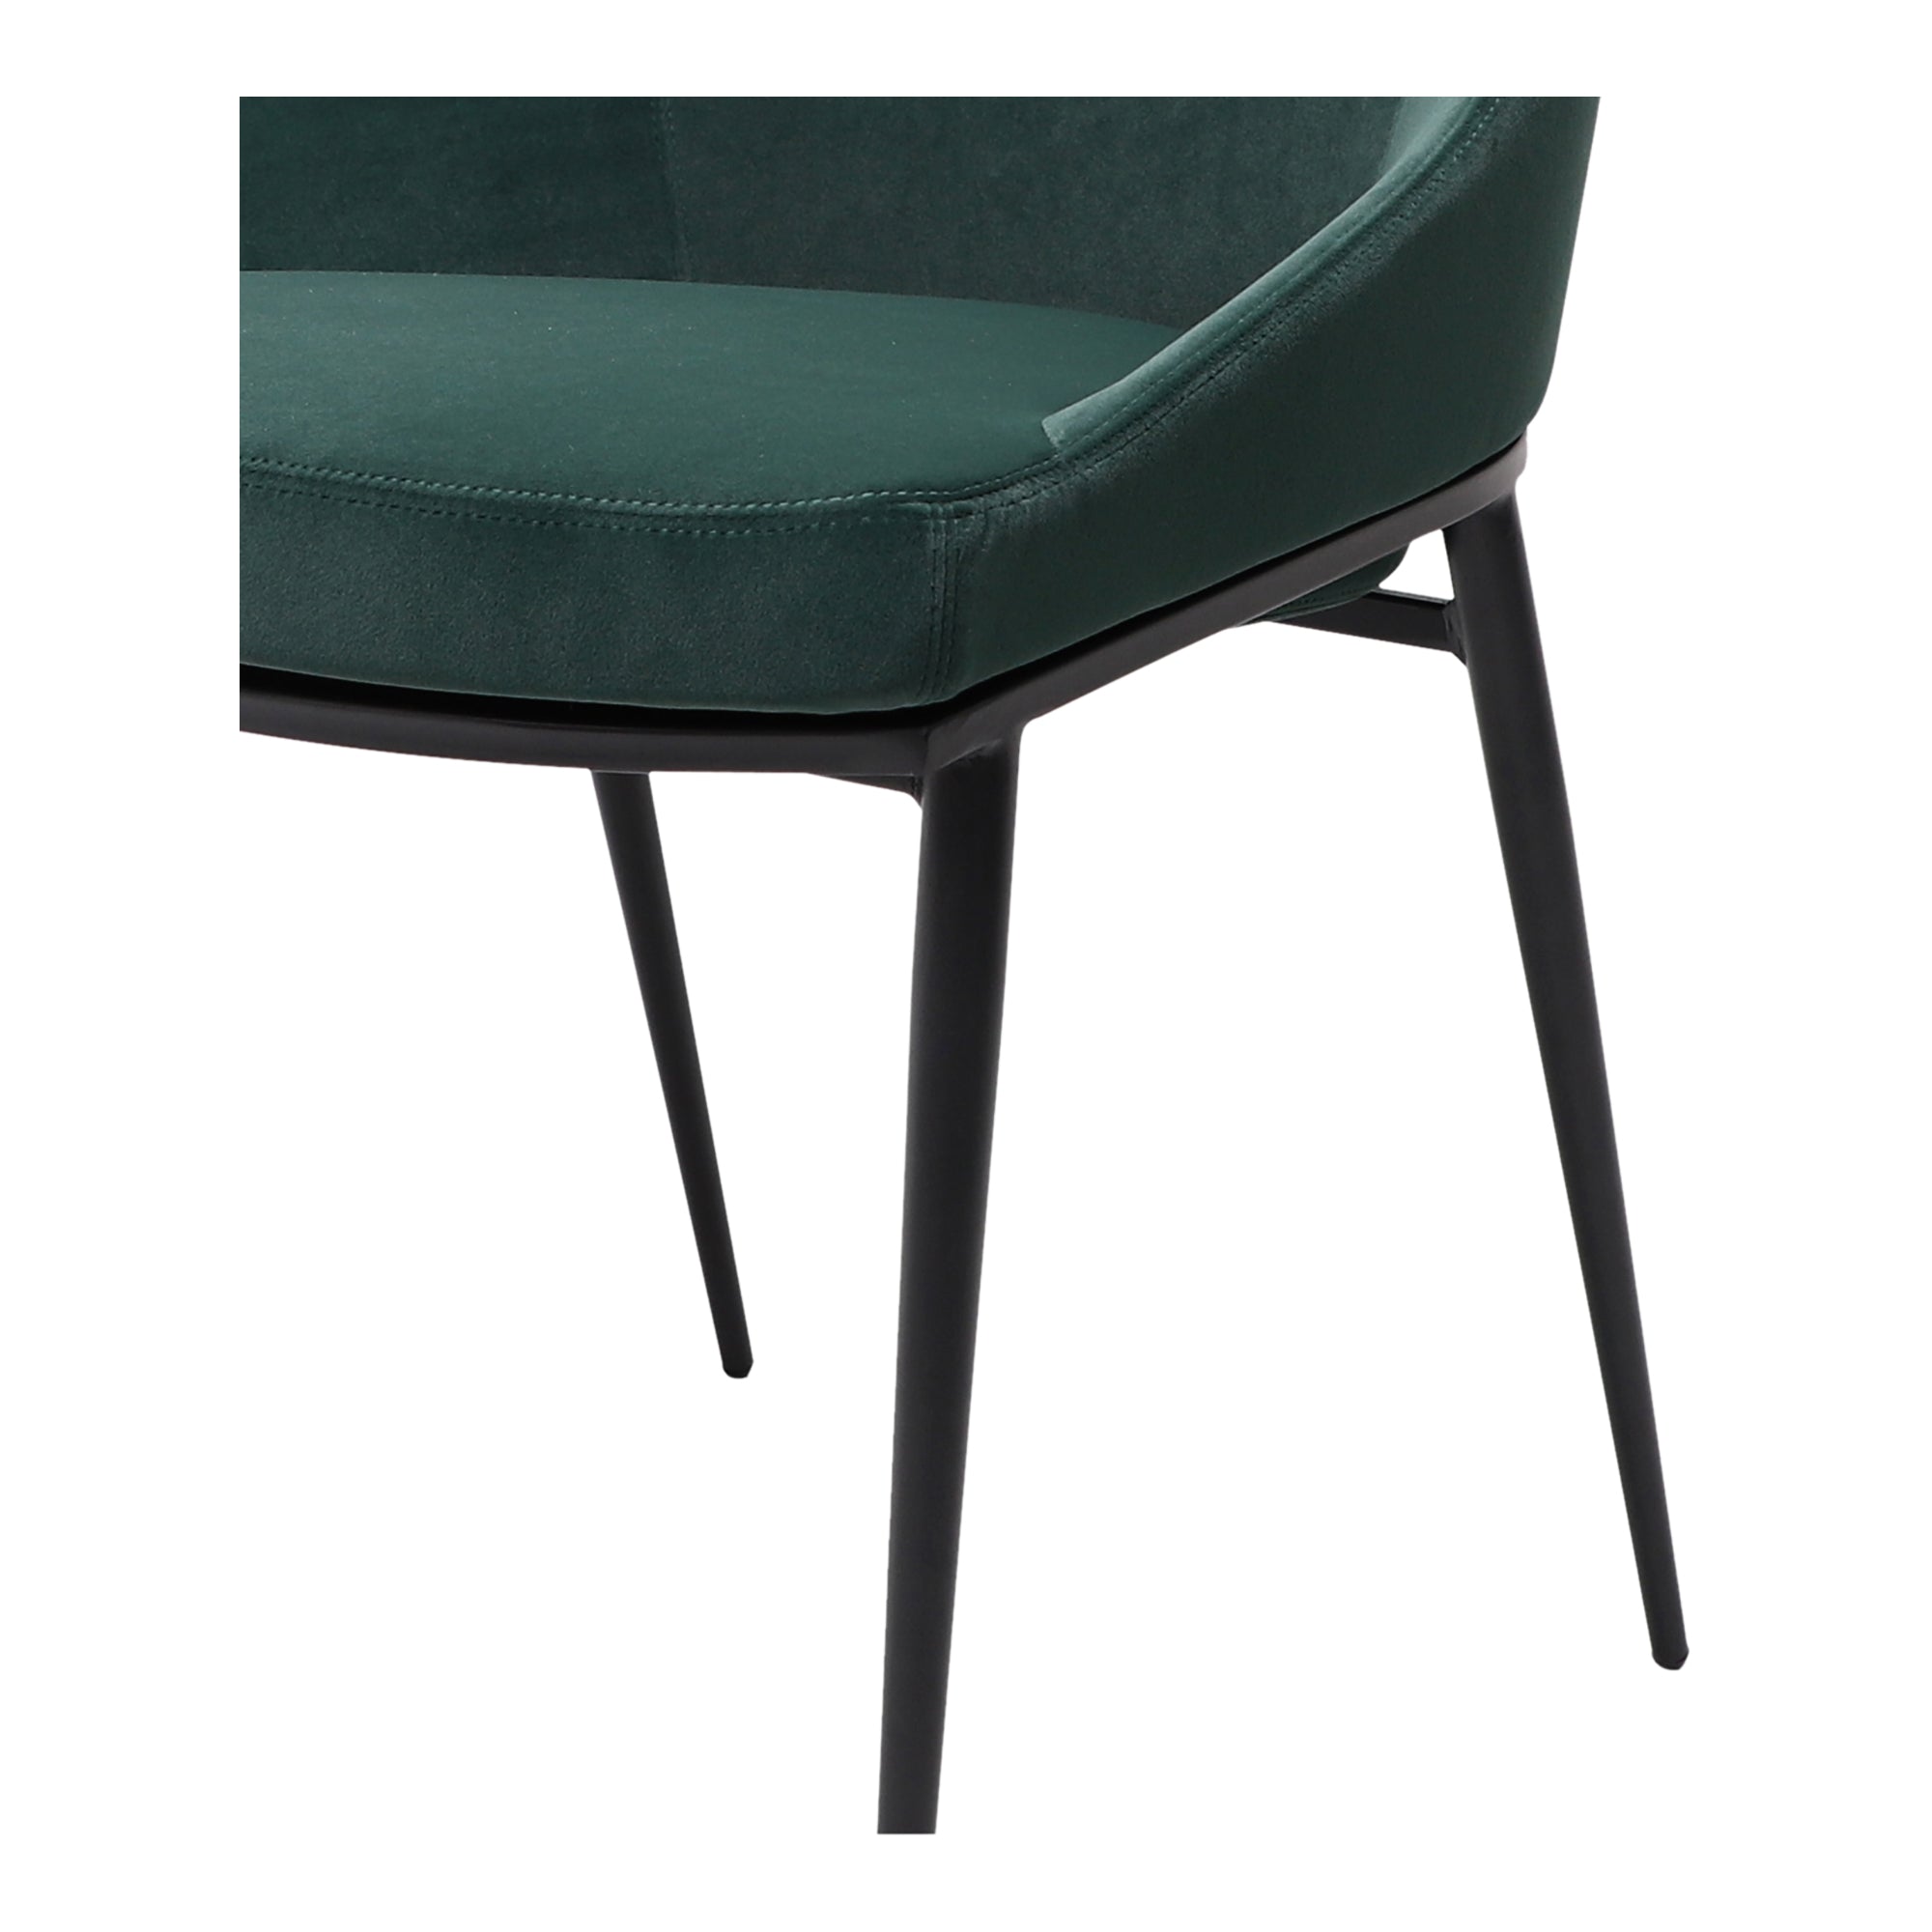 Sedona Dining Chair Green Velvet - Set Of Two